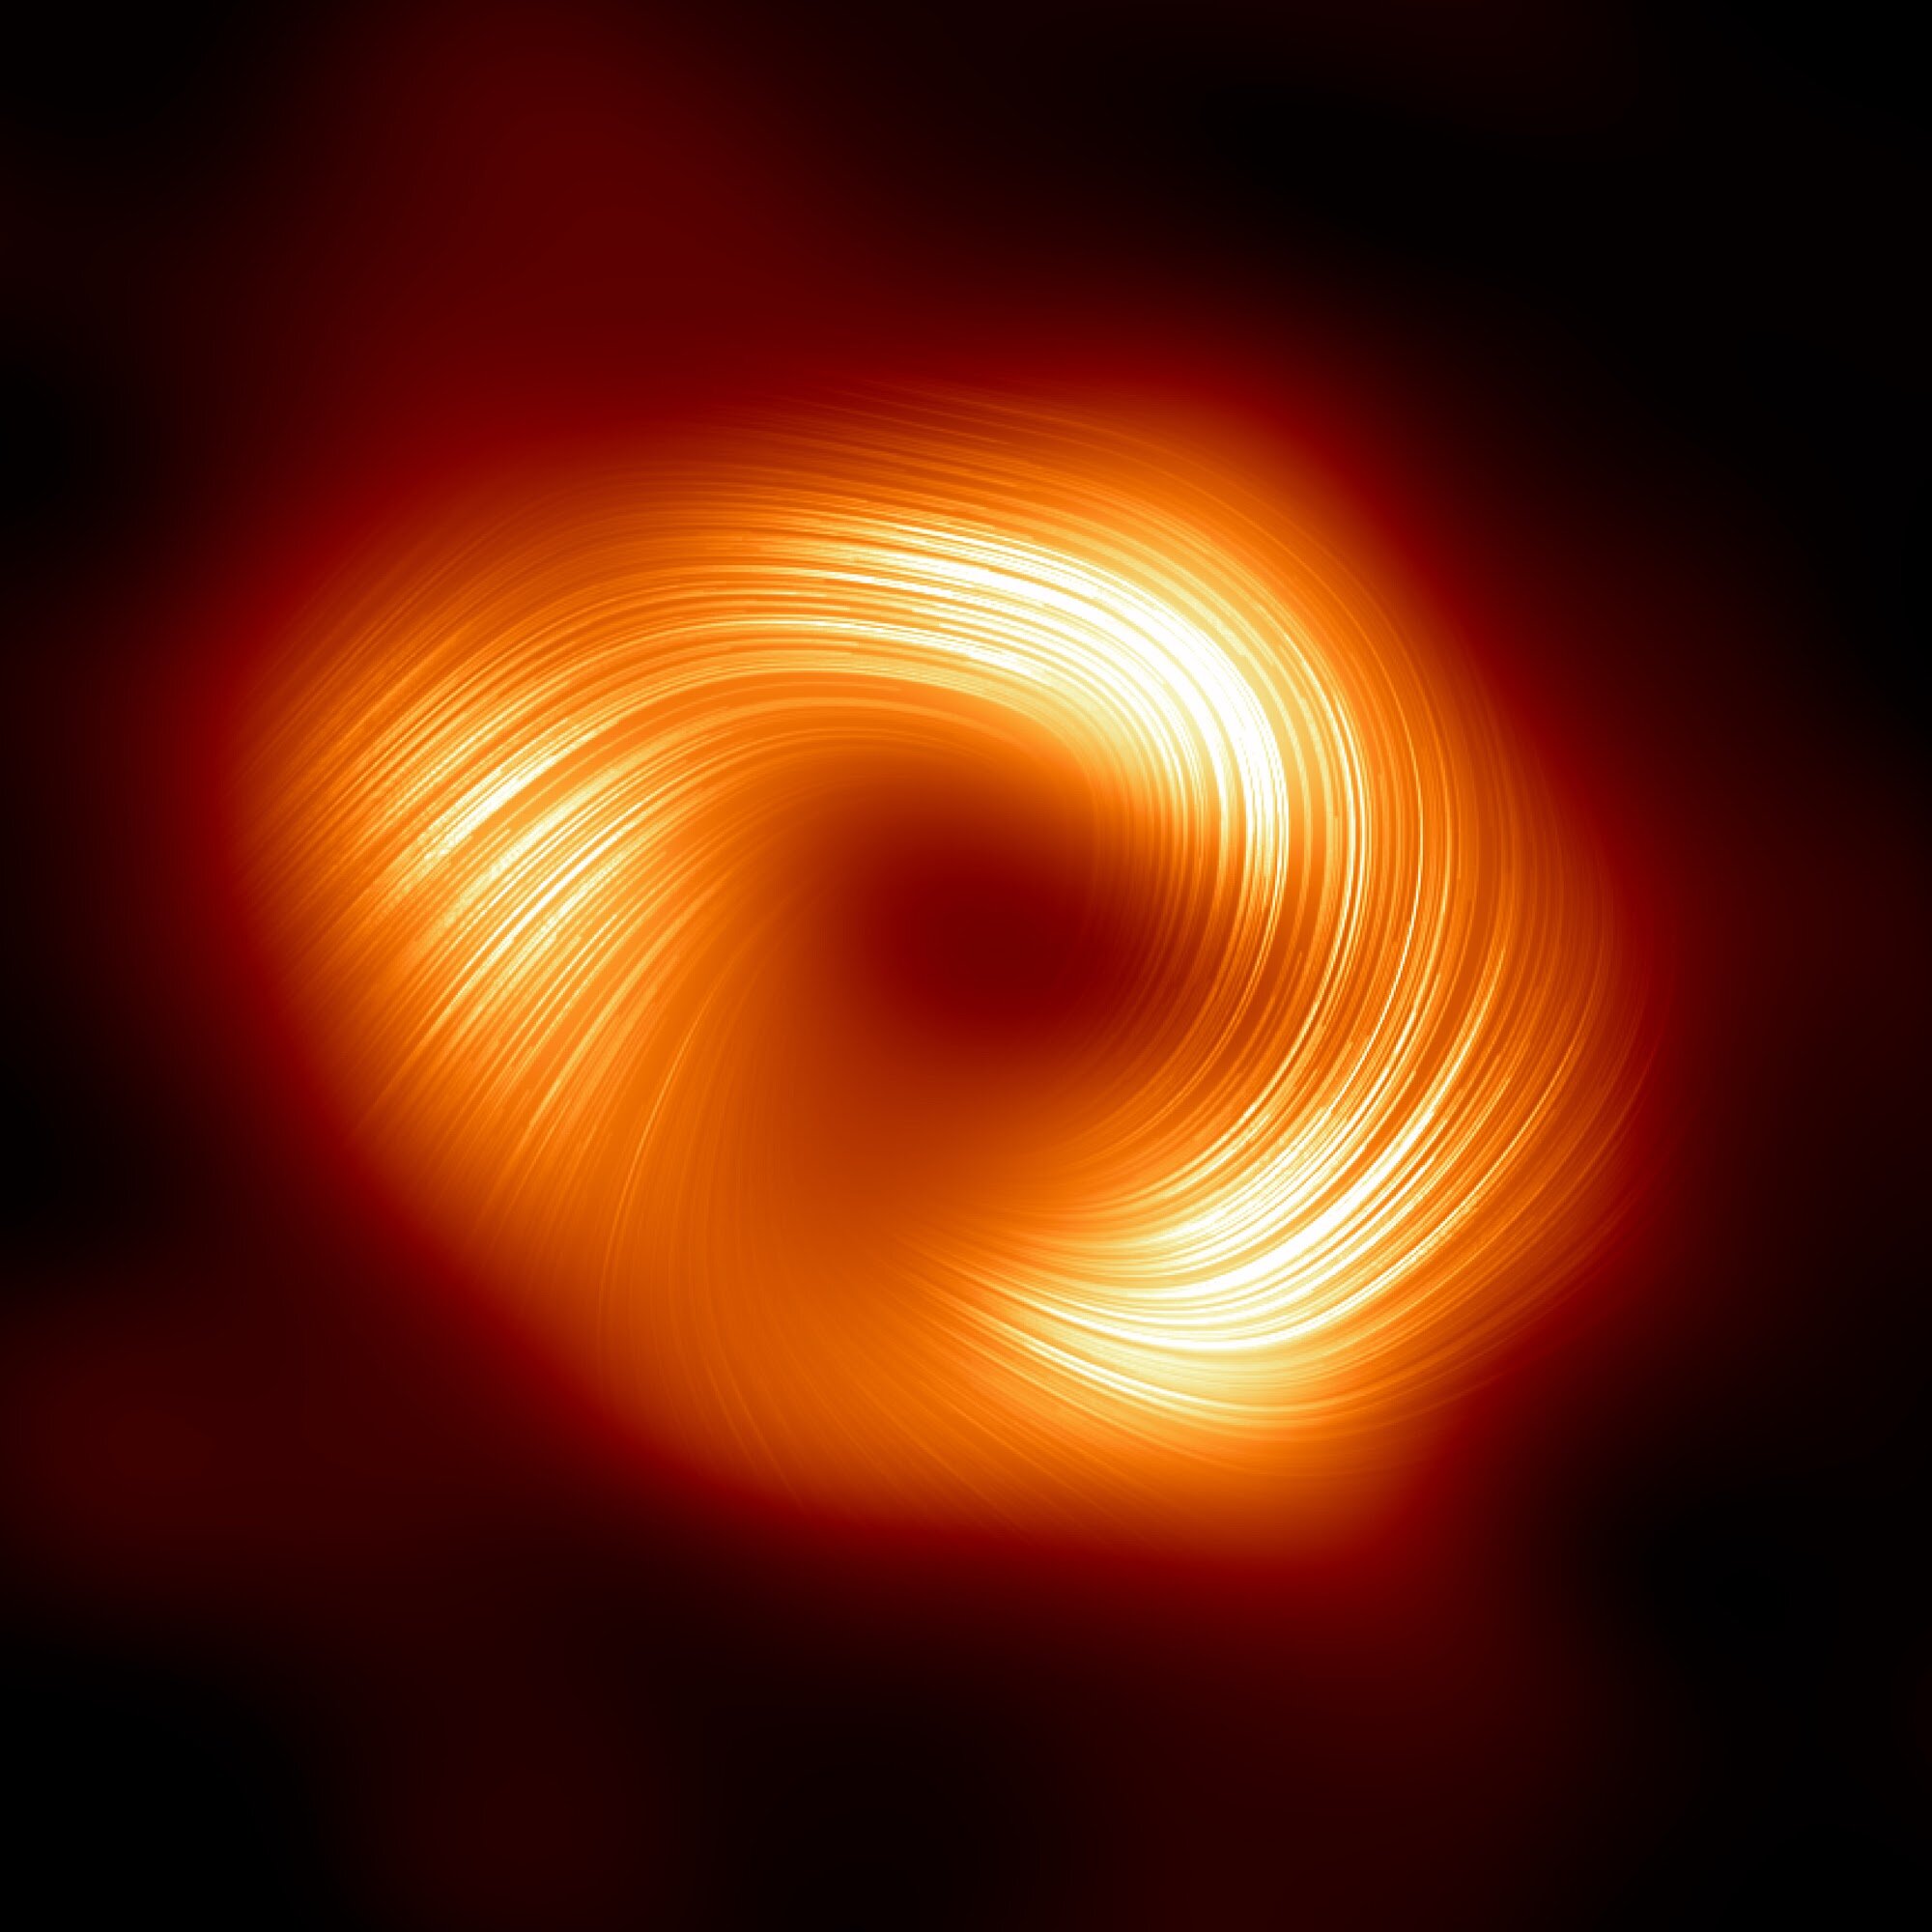 Gli astronomi rilevano forti campi magnetici fluttuanti ai margini del buco nero centrale della Via Lattea